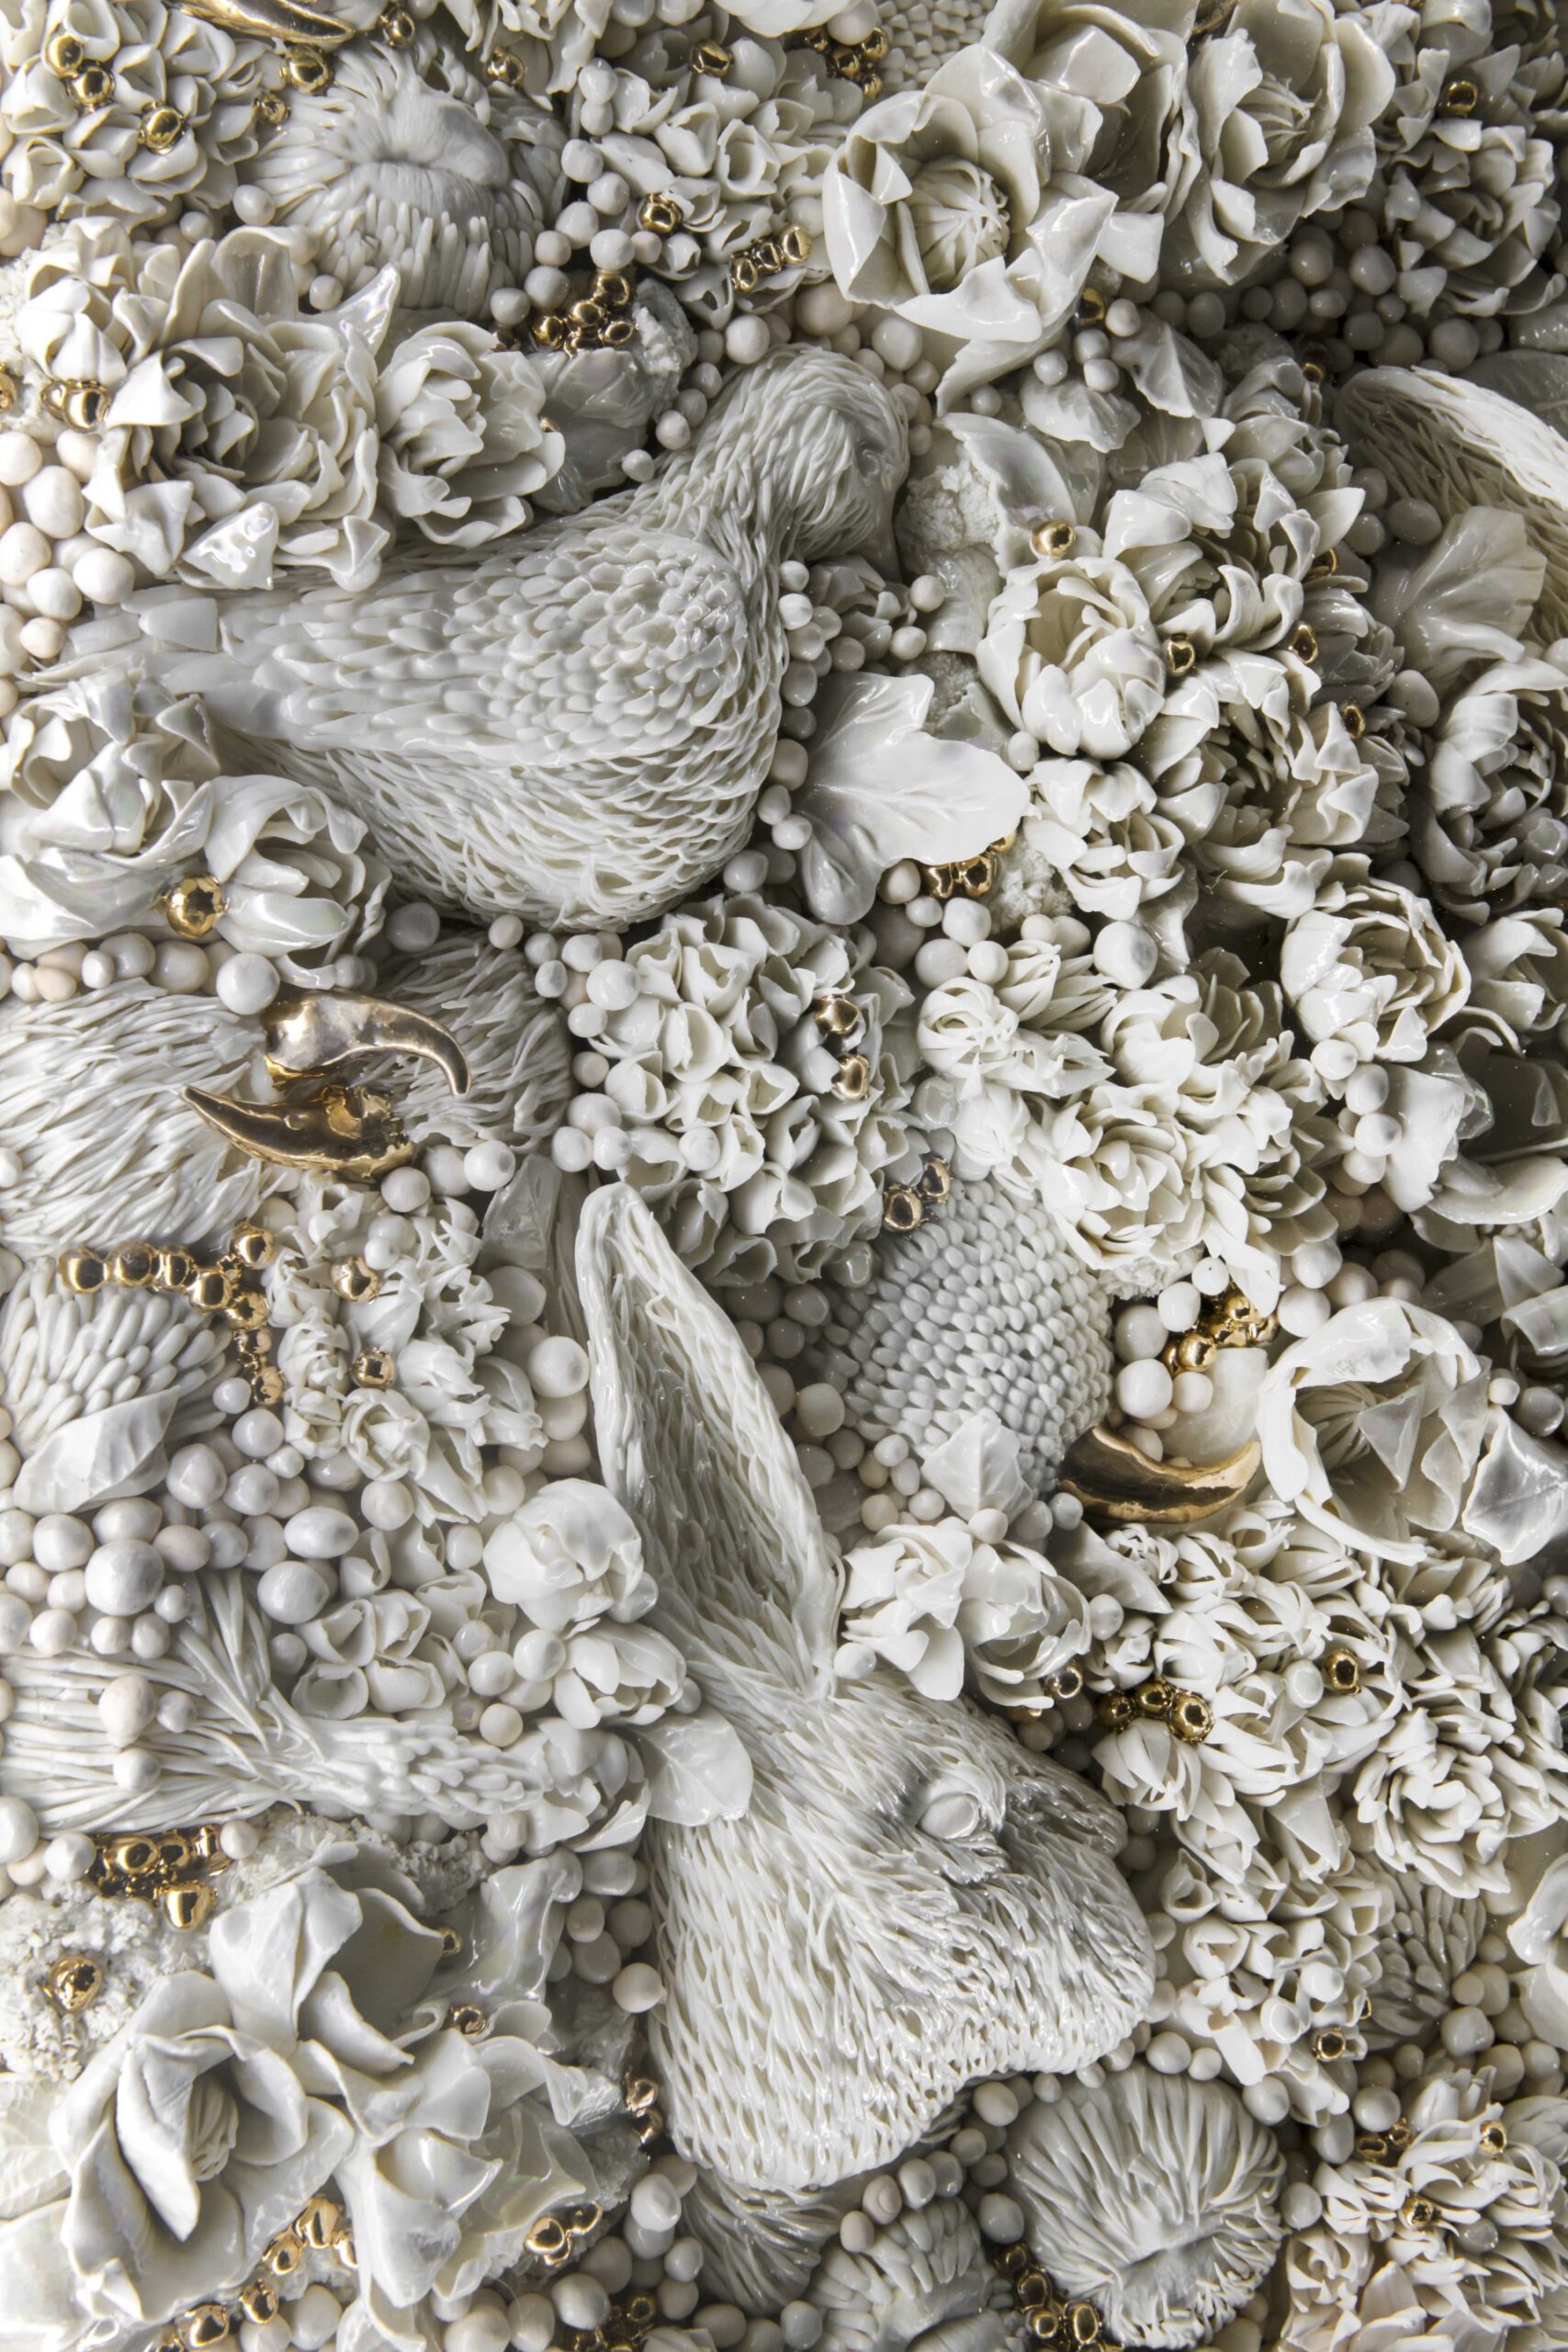 Melis Buyruk, Kalila wa Dimna, Porselen, 18K Dekoratif Altın, 120 cm x 120 cm, 2020, Fotoğraf: Melis Buyruk